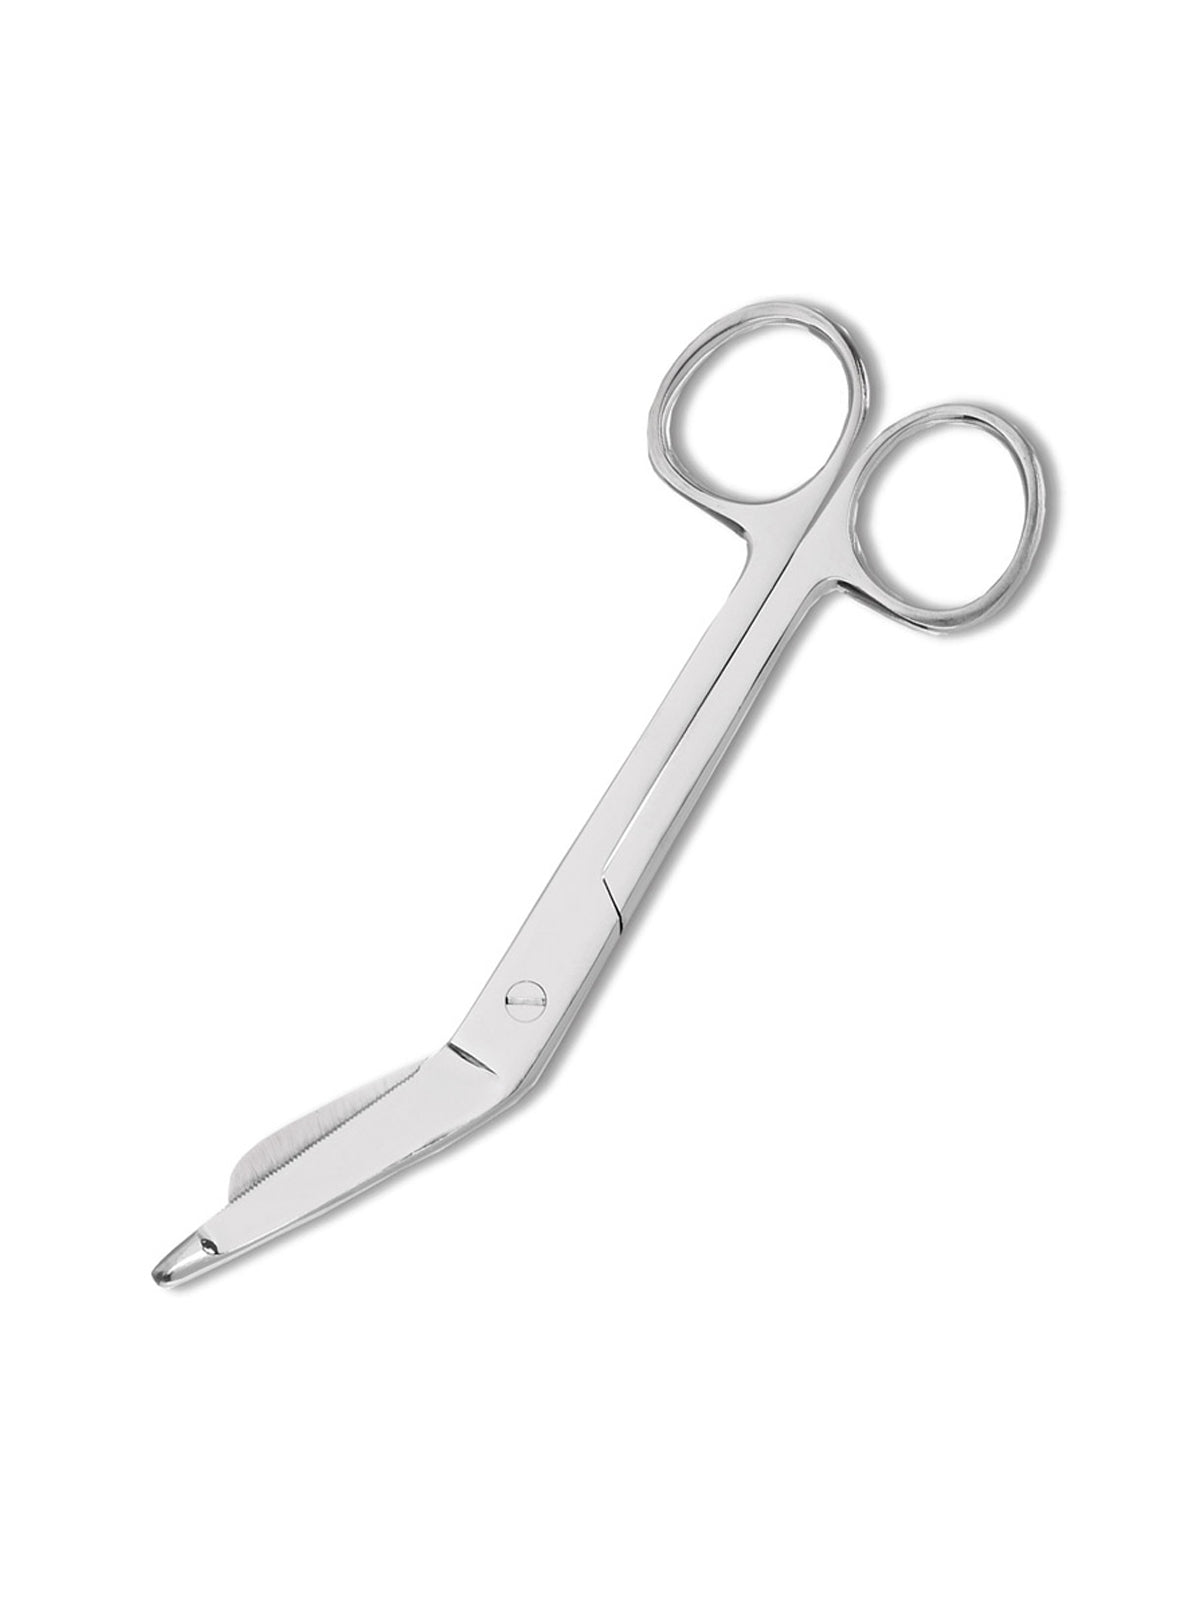 Serrated Blades Scissors - 153SR - Standard